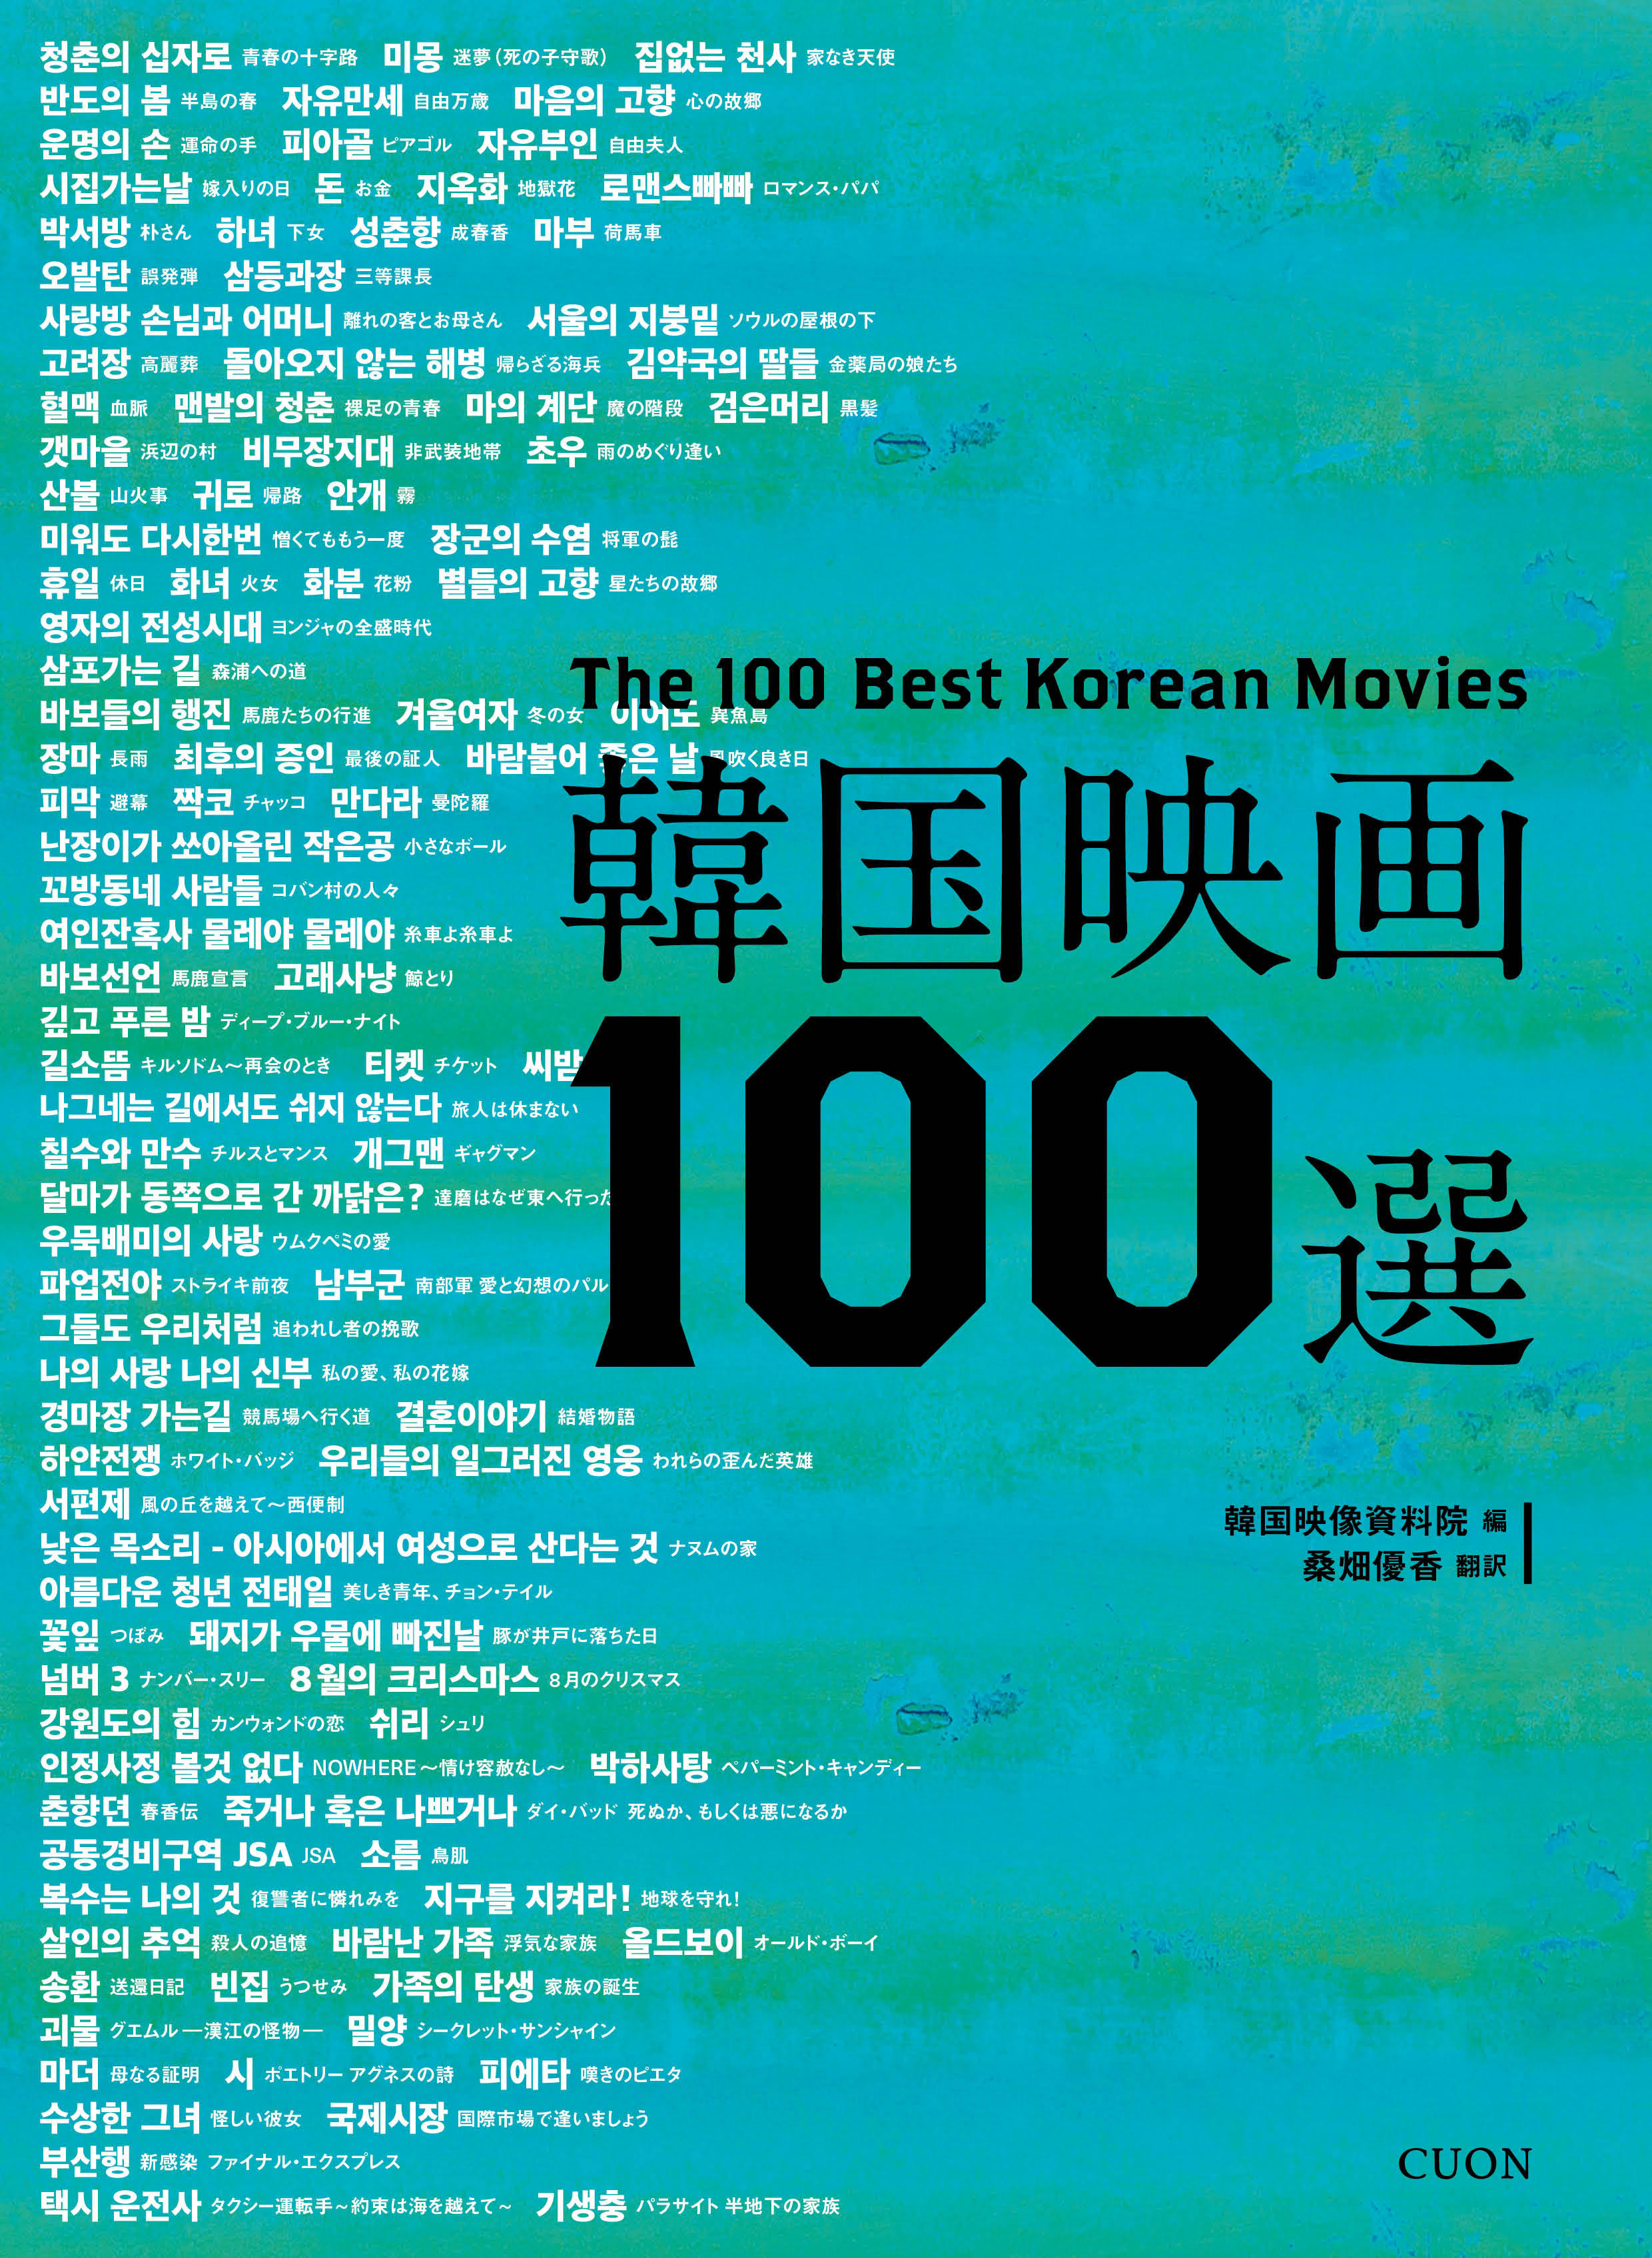 韓国映画100選の商品画像